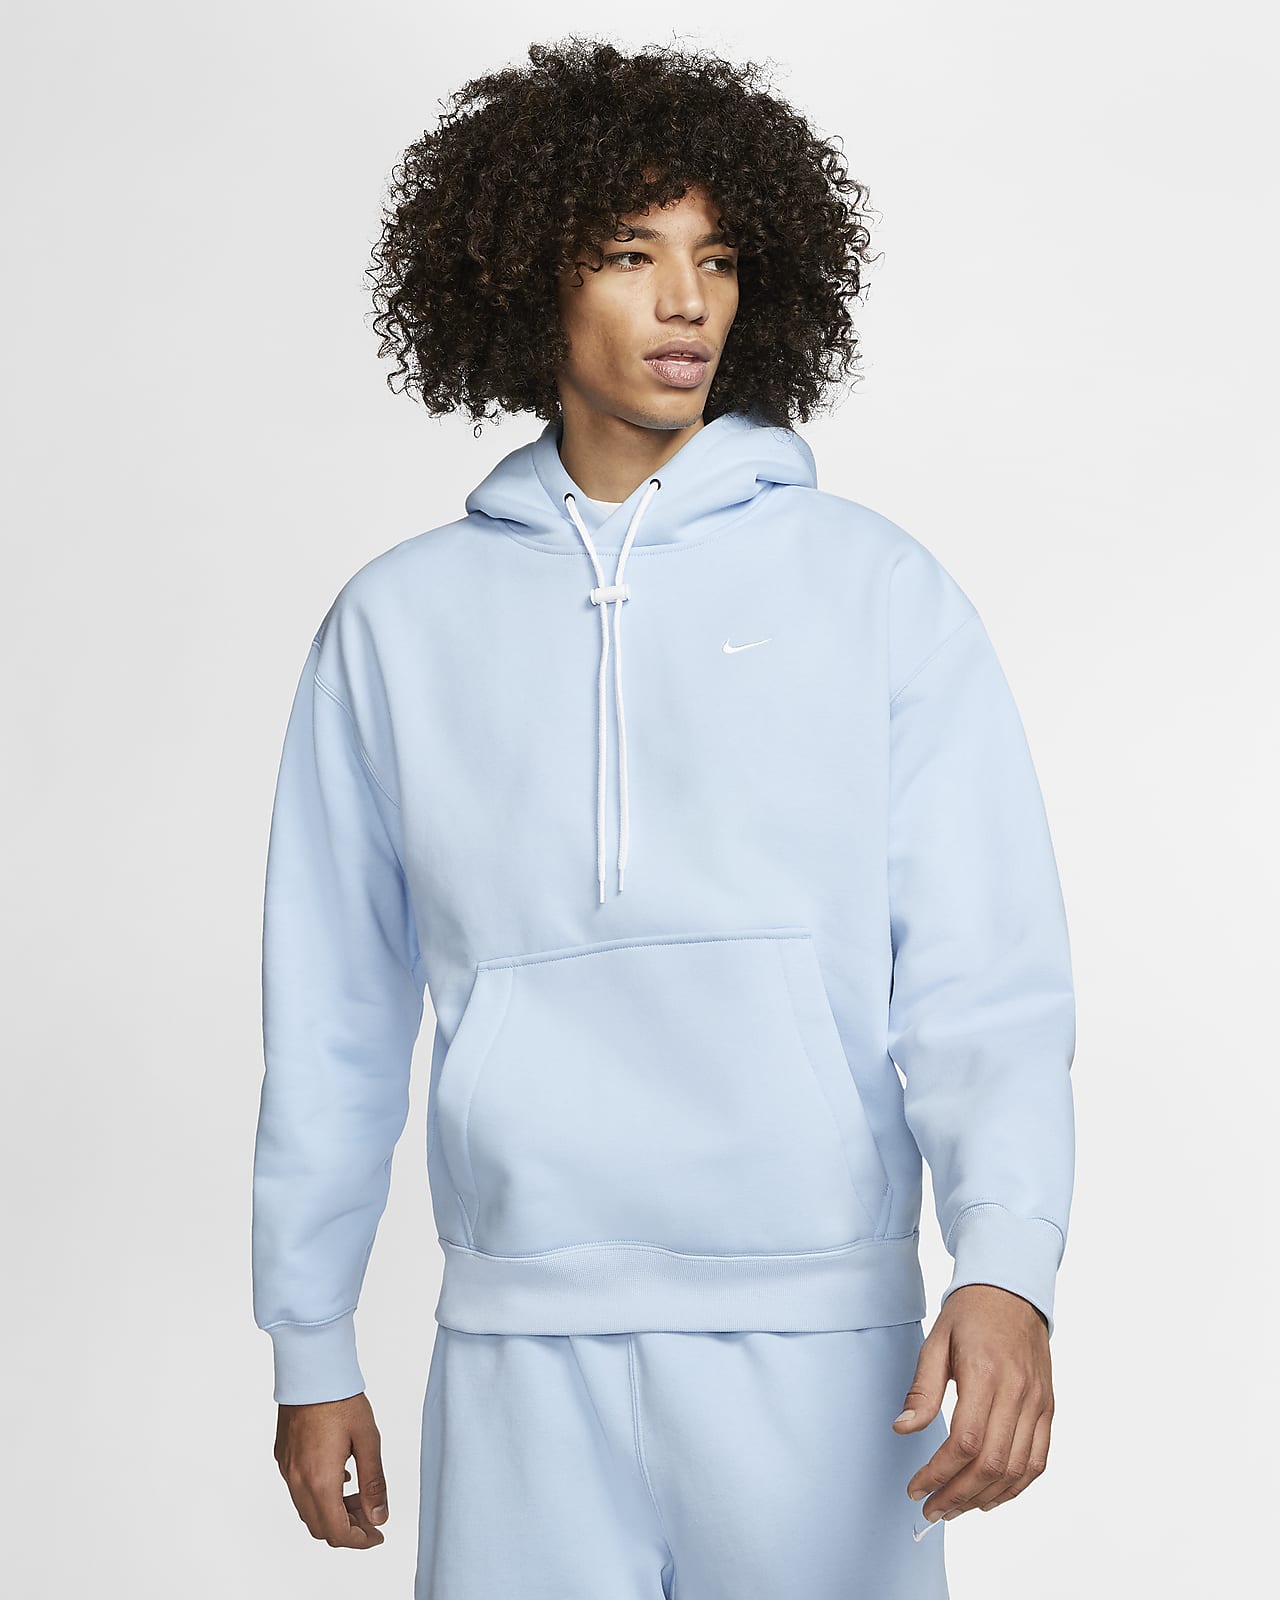 nikelab hoodie blue